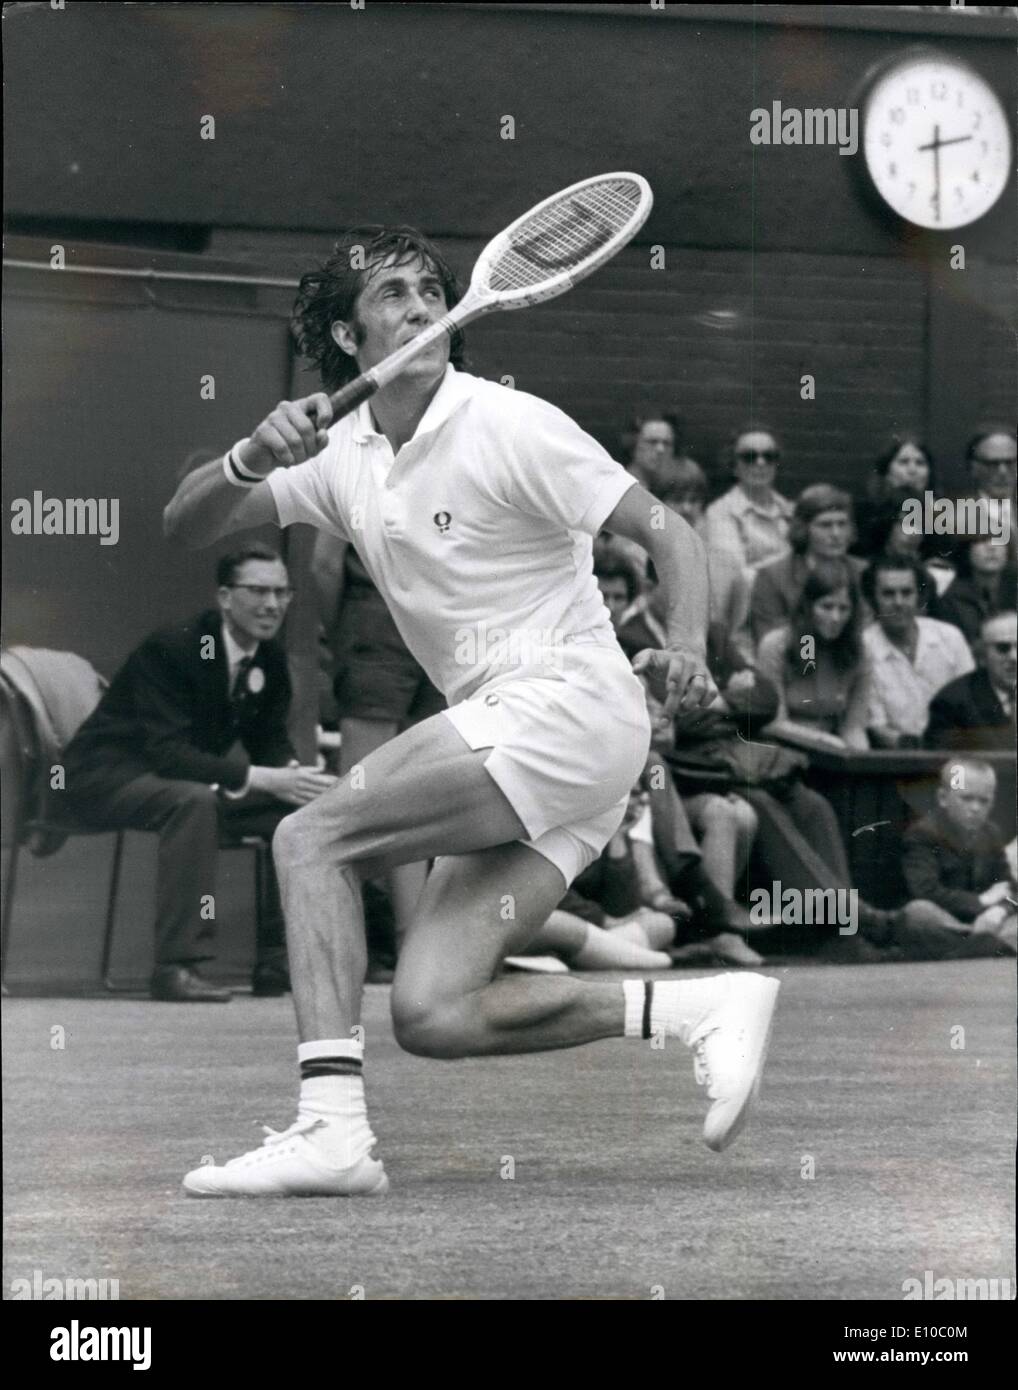 Giugno 06, 1972 - tennis a Wimbledon. Stan Smith vince Uomini Singoli  finale. A causa della pioggia causando il rinvio di sabato, il finale di  uomini singoli ha avuto luogo ieri a